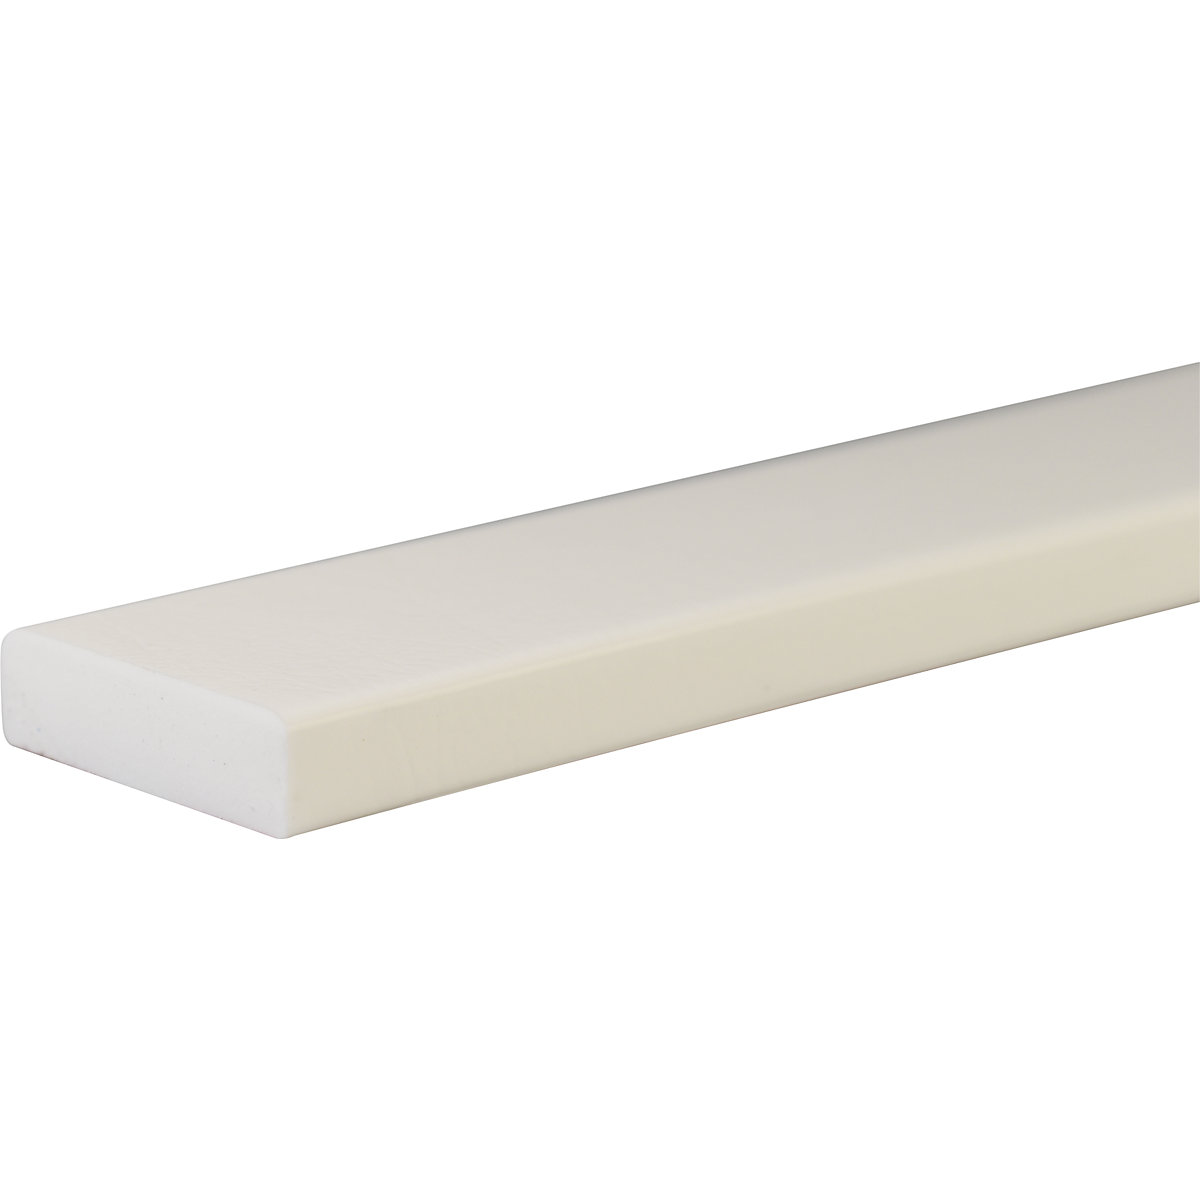 Knuffi® felületvédő – SHG, S típus, 1 m-es darab, fehér-31